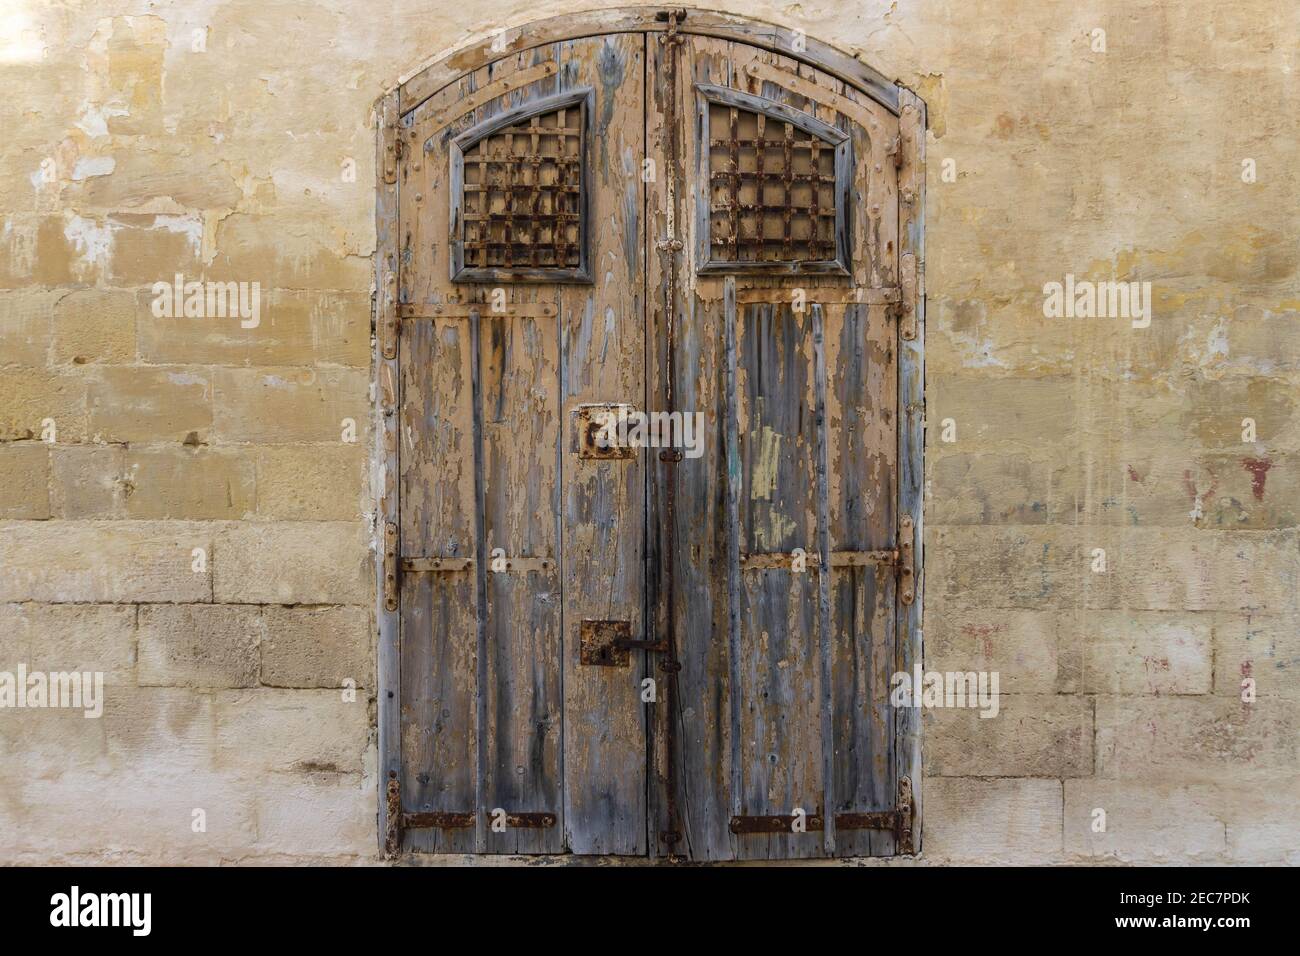 Vintage vecchio magazzino legno marrone verniciato porta con antico muro di mattoni di calcare. Vista frontale dei cancelli del magazzino abbandonato a Malta Foto Stock